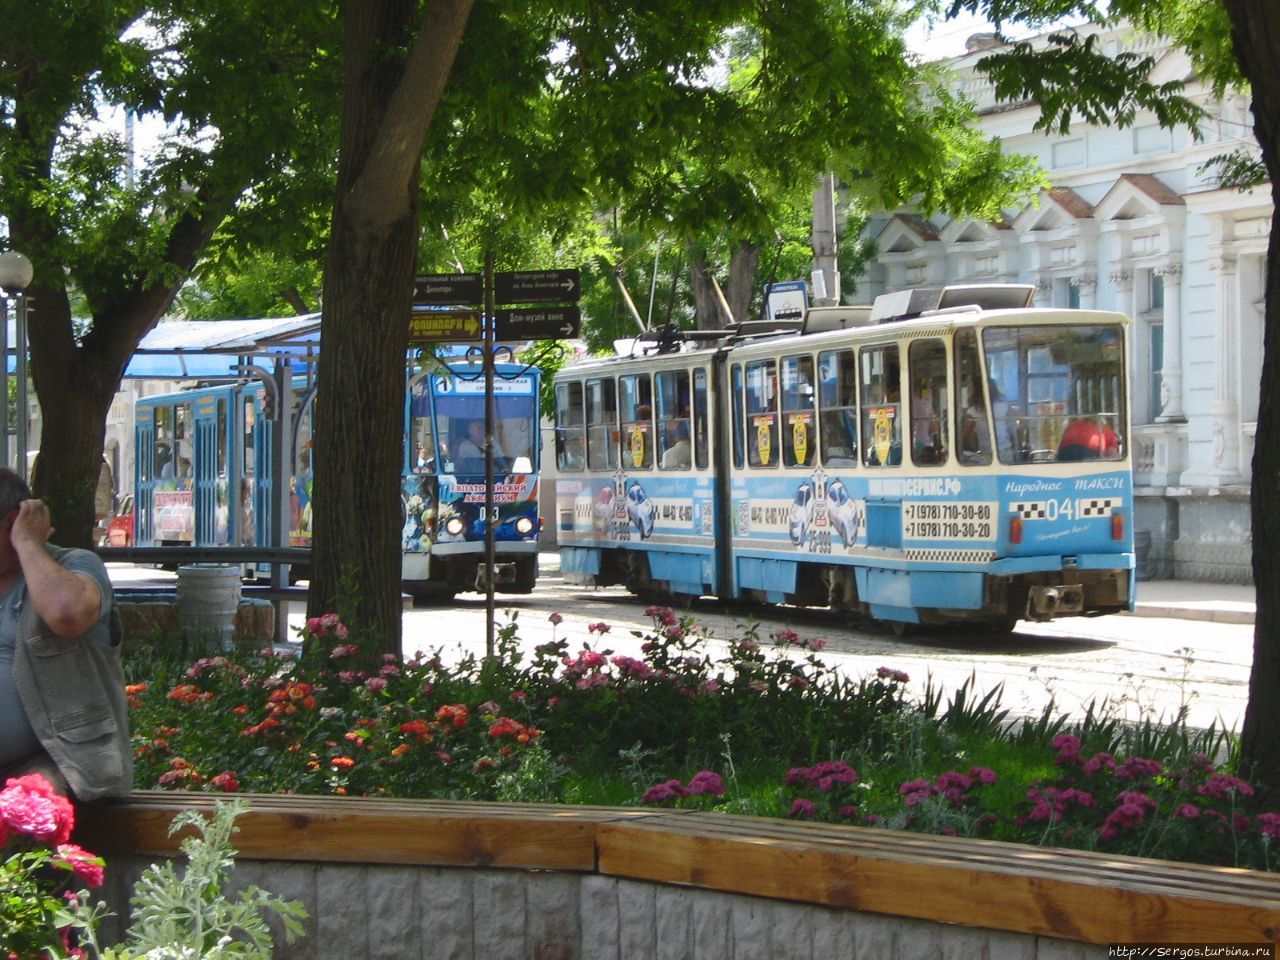 однопутный узкоколейный трамвай в Евпатории Республика Крым, Россия